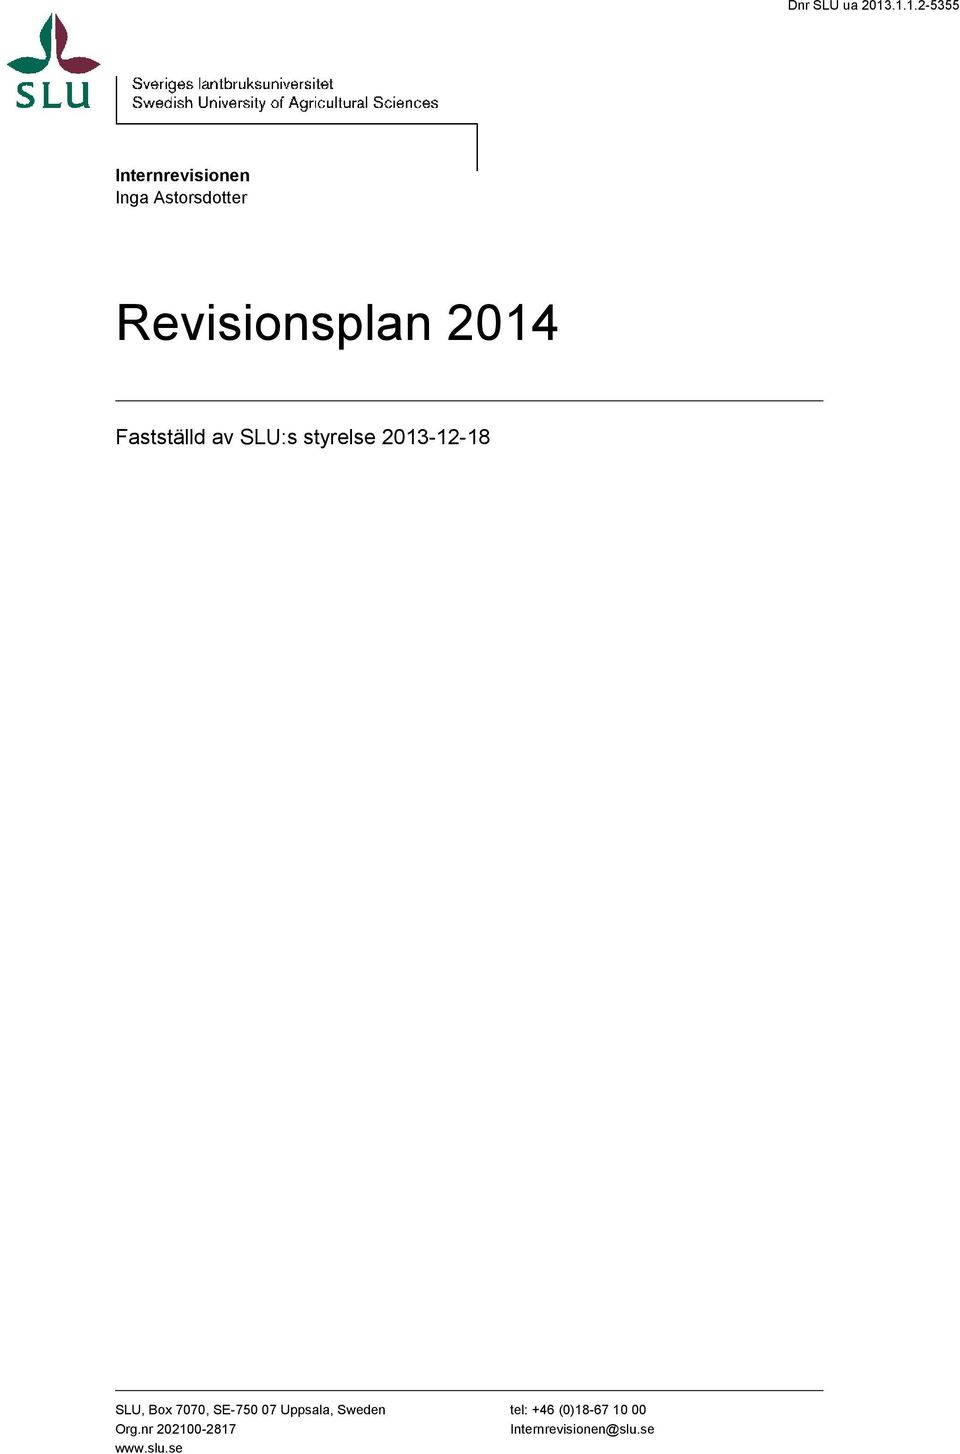 Revisionsplan 2014 Fastställd av SLU:s styrelse 2013-12-18